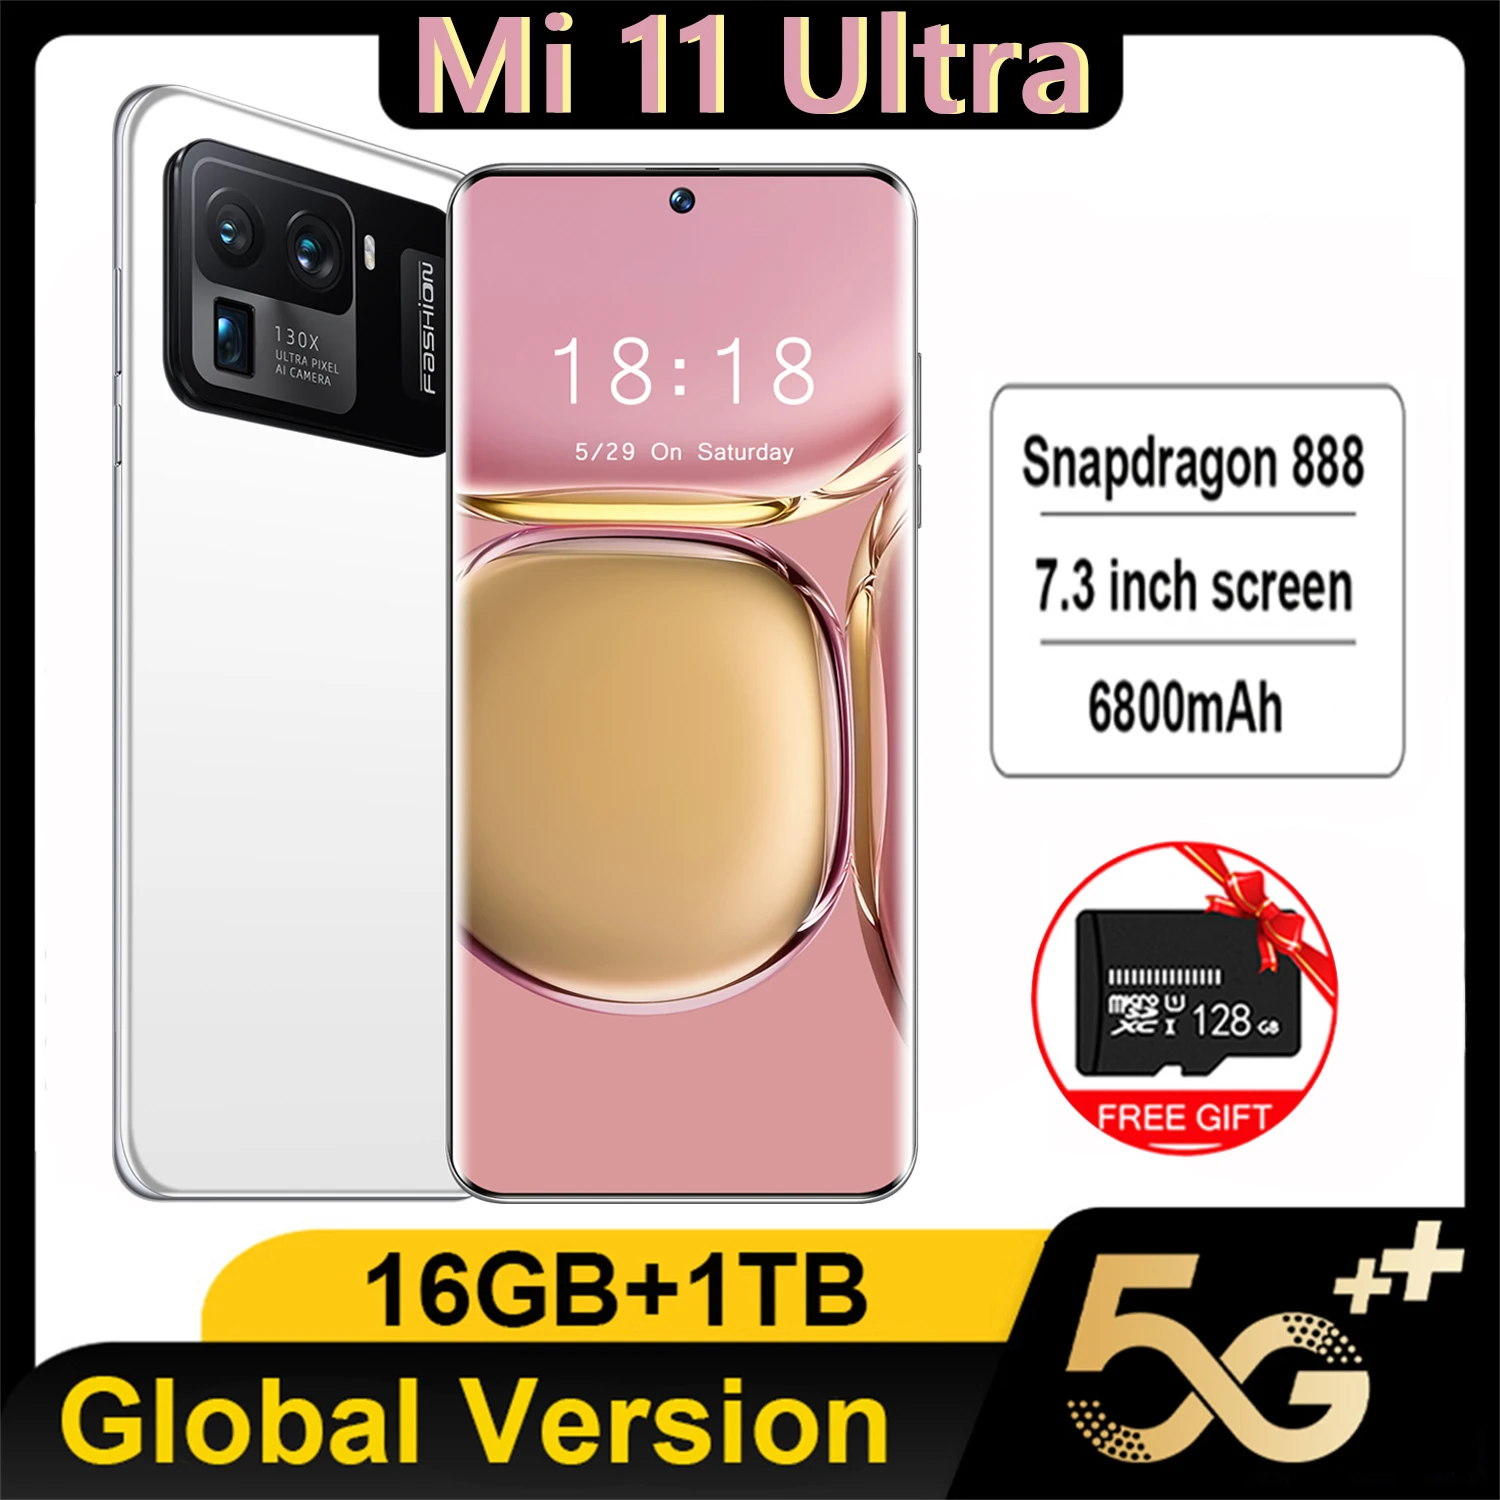 

Смартфон M11 Ultra, 6800 мАч, Android, 16 ГБ + 1 ТБ, Qualcomm Snapdragon 888, 4G/телефон с двумя картами, разблокированный Оригинальный сотовый телефон